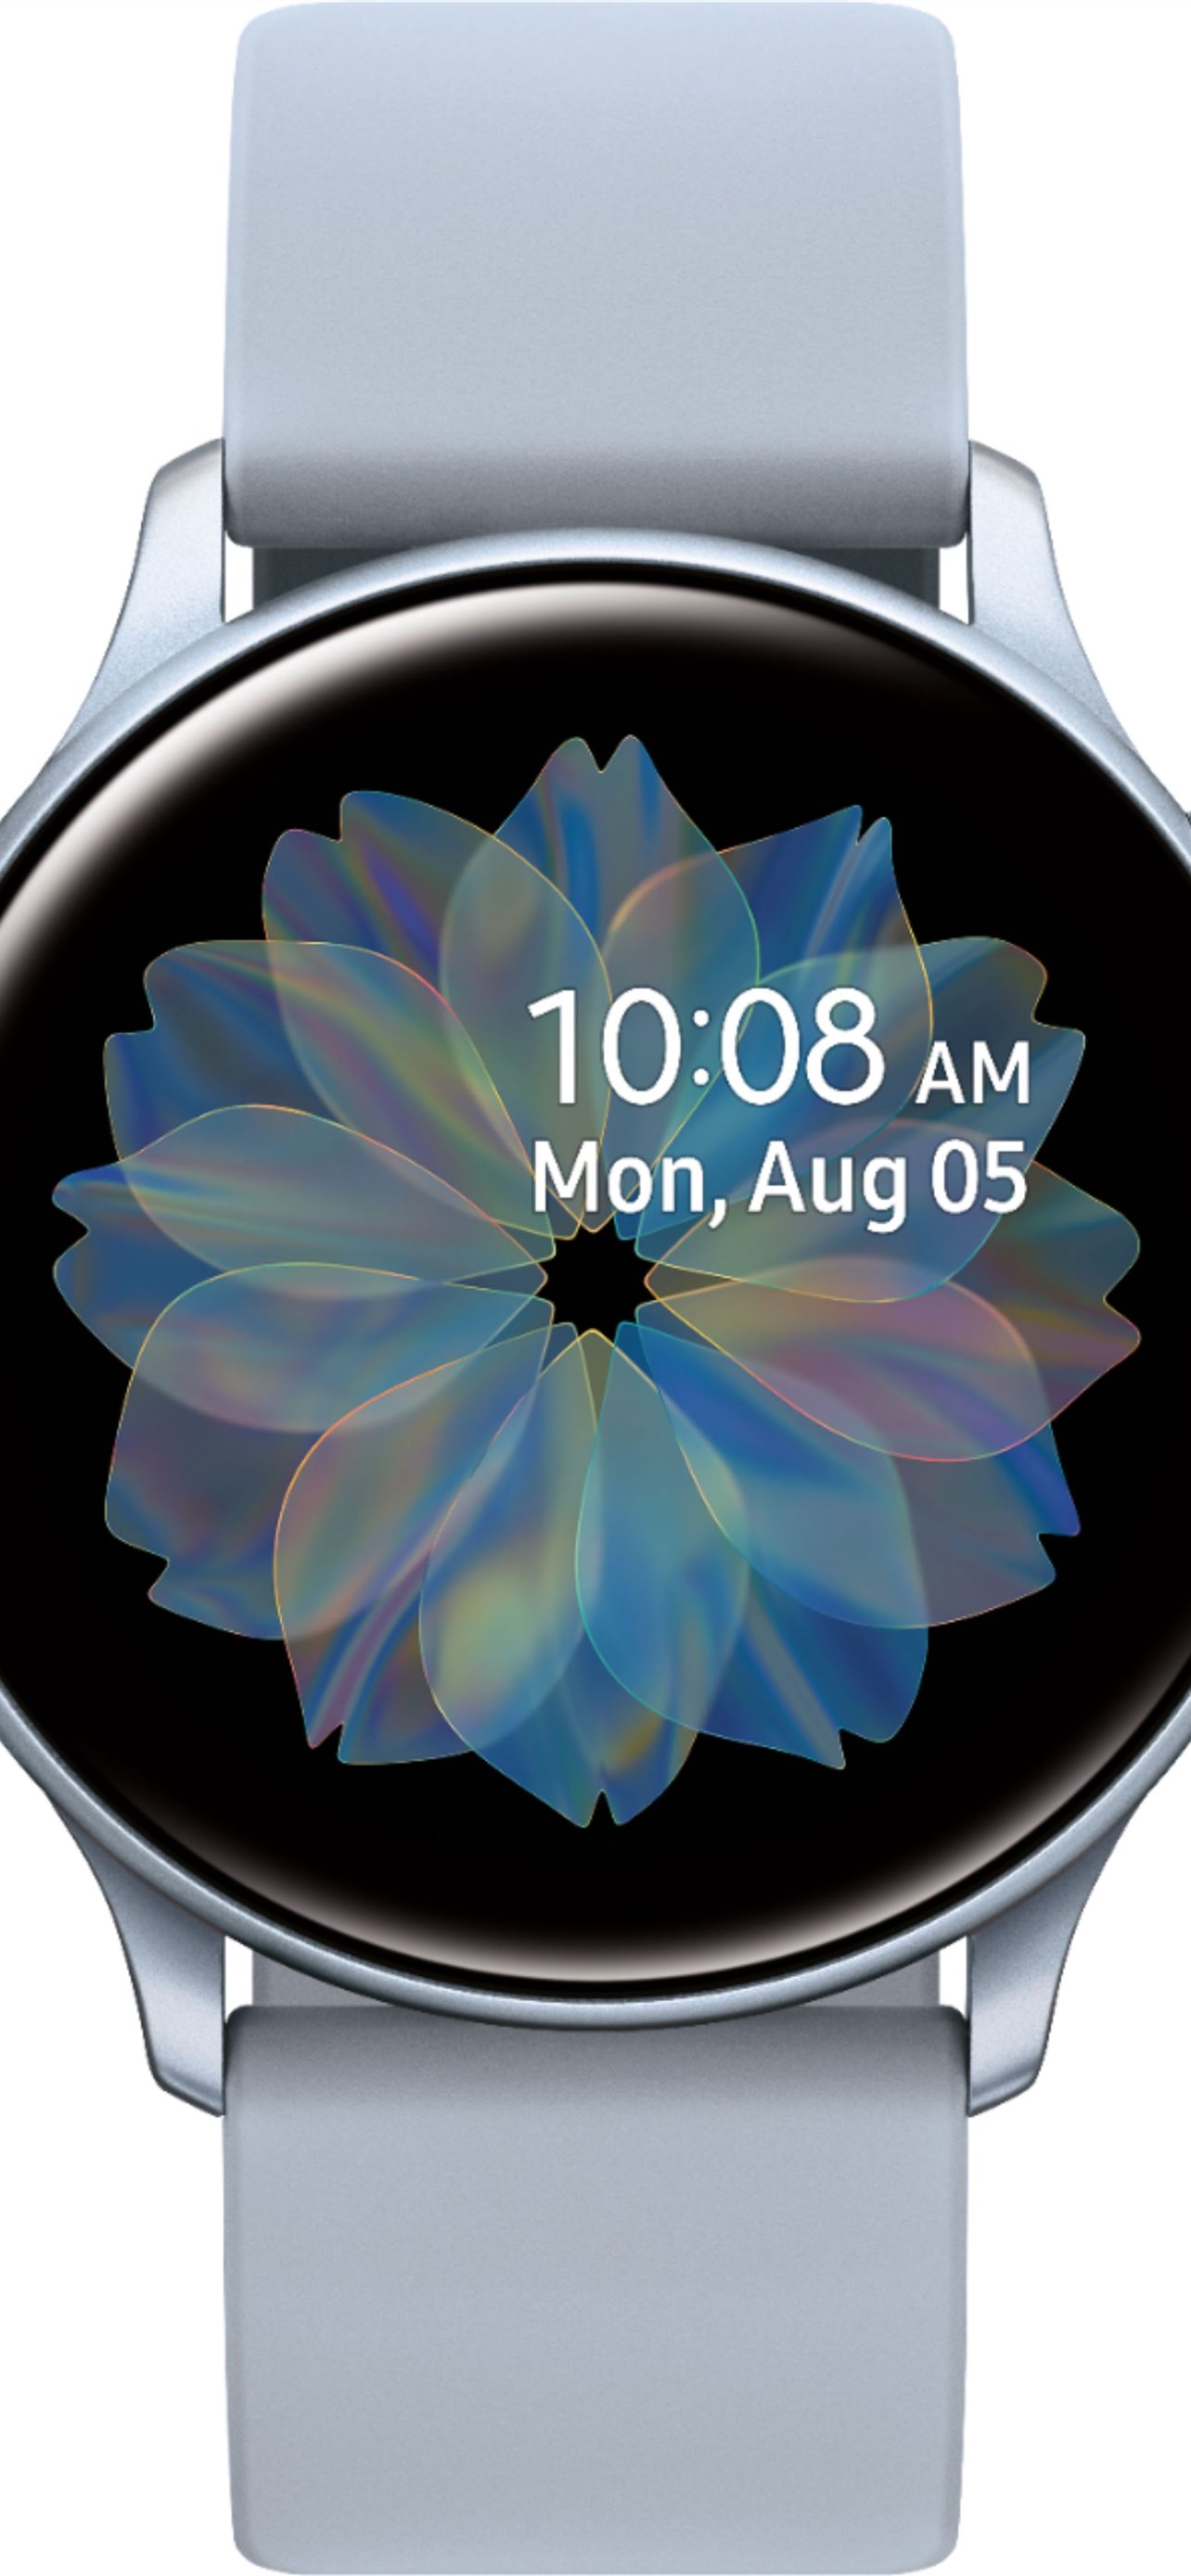 Samsung Galaxy Watch Active 2: Trải nghiệm công nghệ tiên tiến trên tay với chiếc Samsung Galaxy Watch Active 2 đầy đủ tính năng và sang trọng đến từ nhà Samsung. Đồng hồ này sẽ giúp bạn kiểm soát sức khỏe, thông báo tin nhắn và cuộc gọi dễ dàng hơn bao giờ hết.